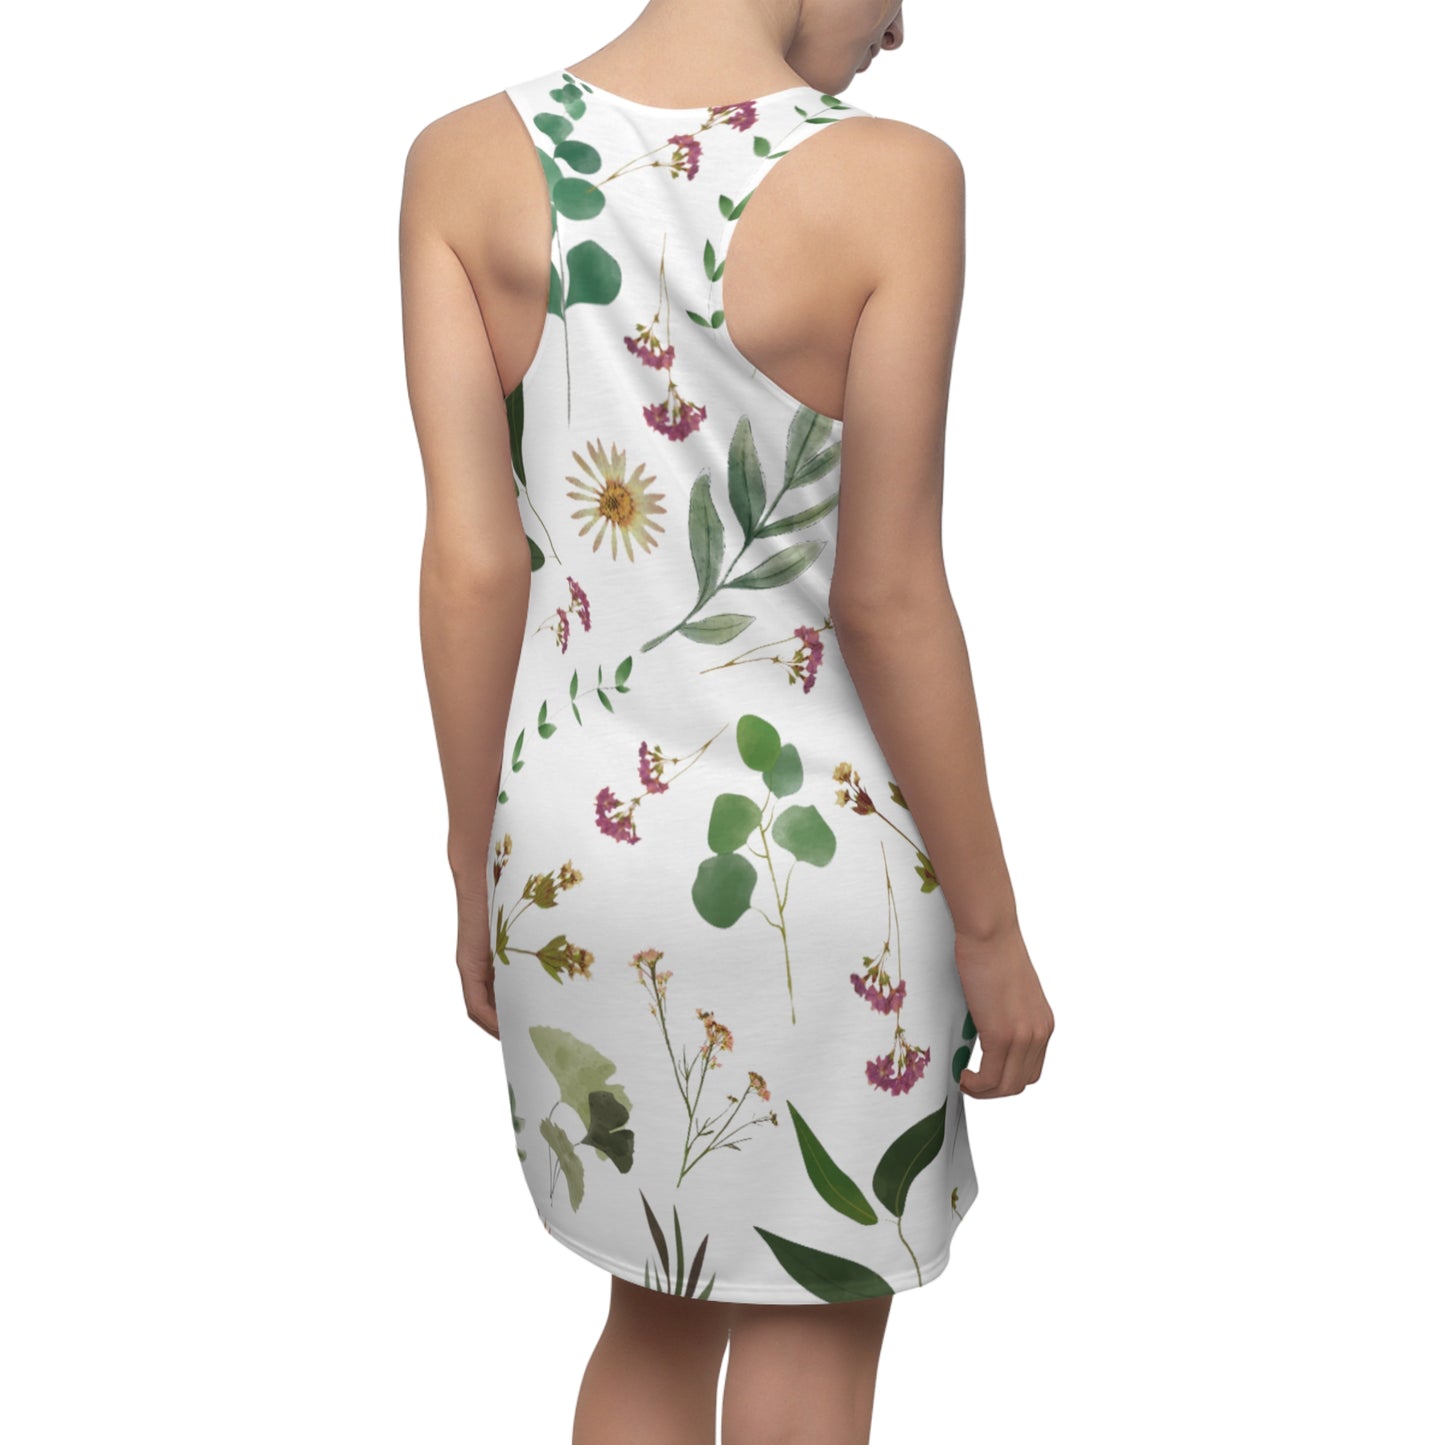 Flower and Leaf Pattern Women's Cut & Sew Racerback Dress